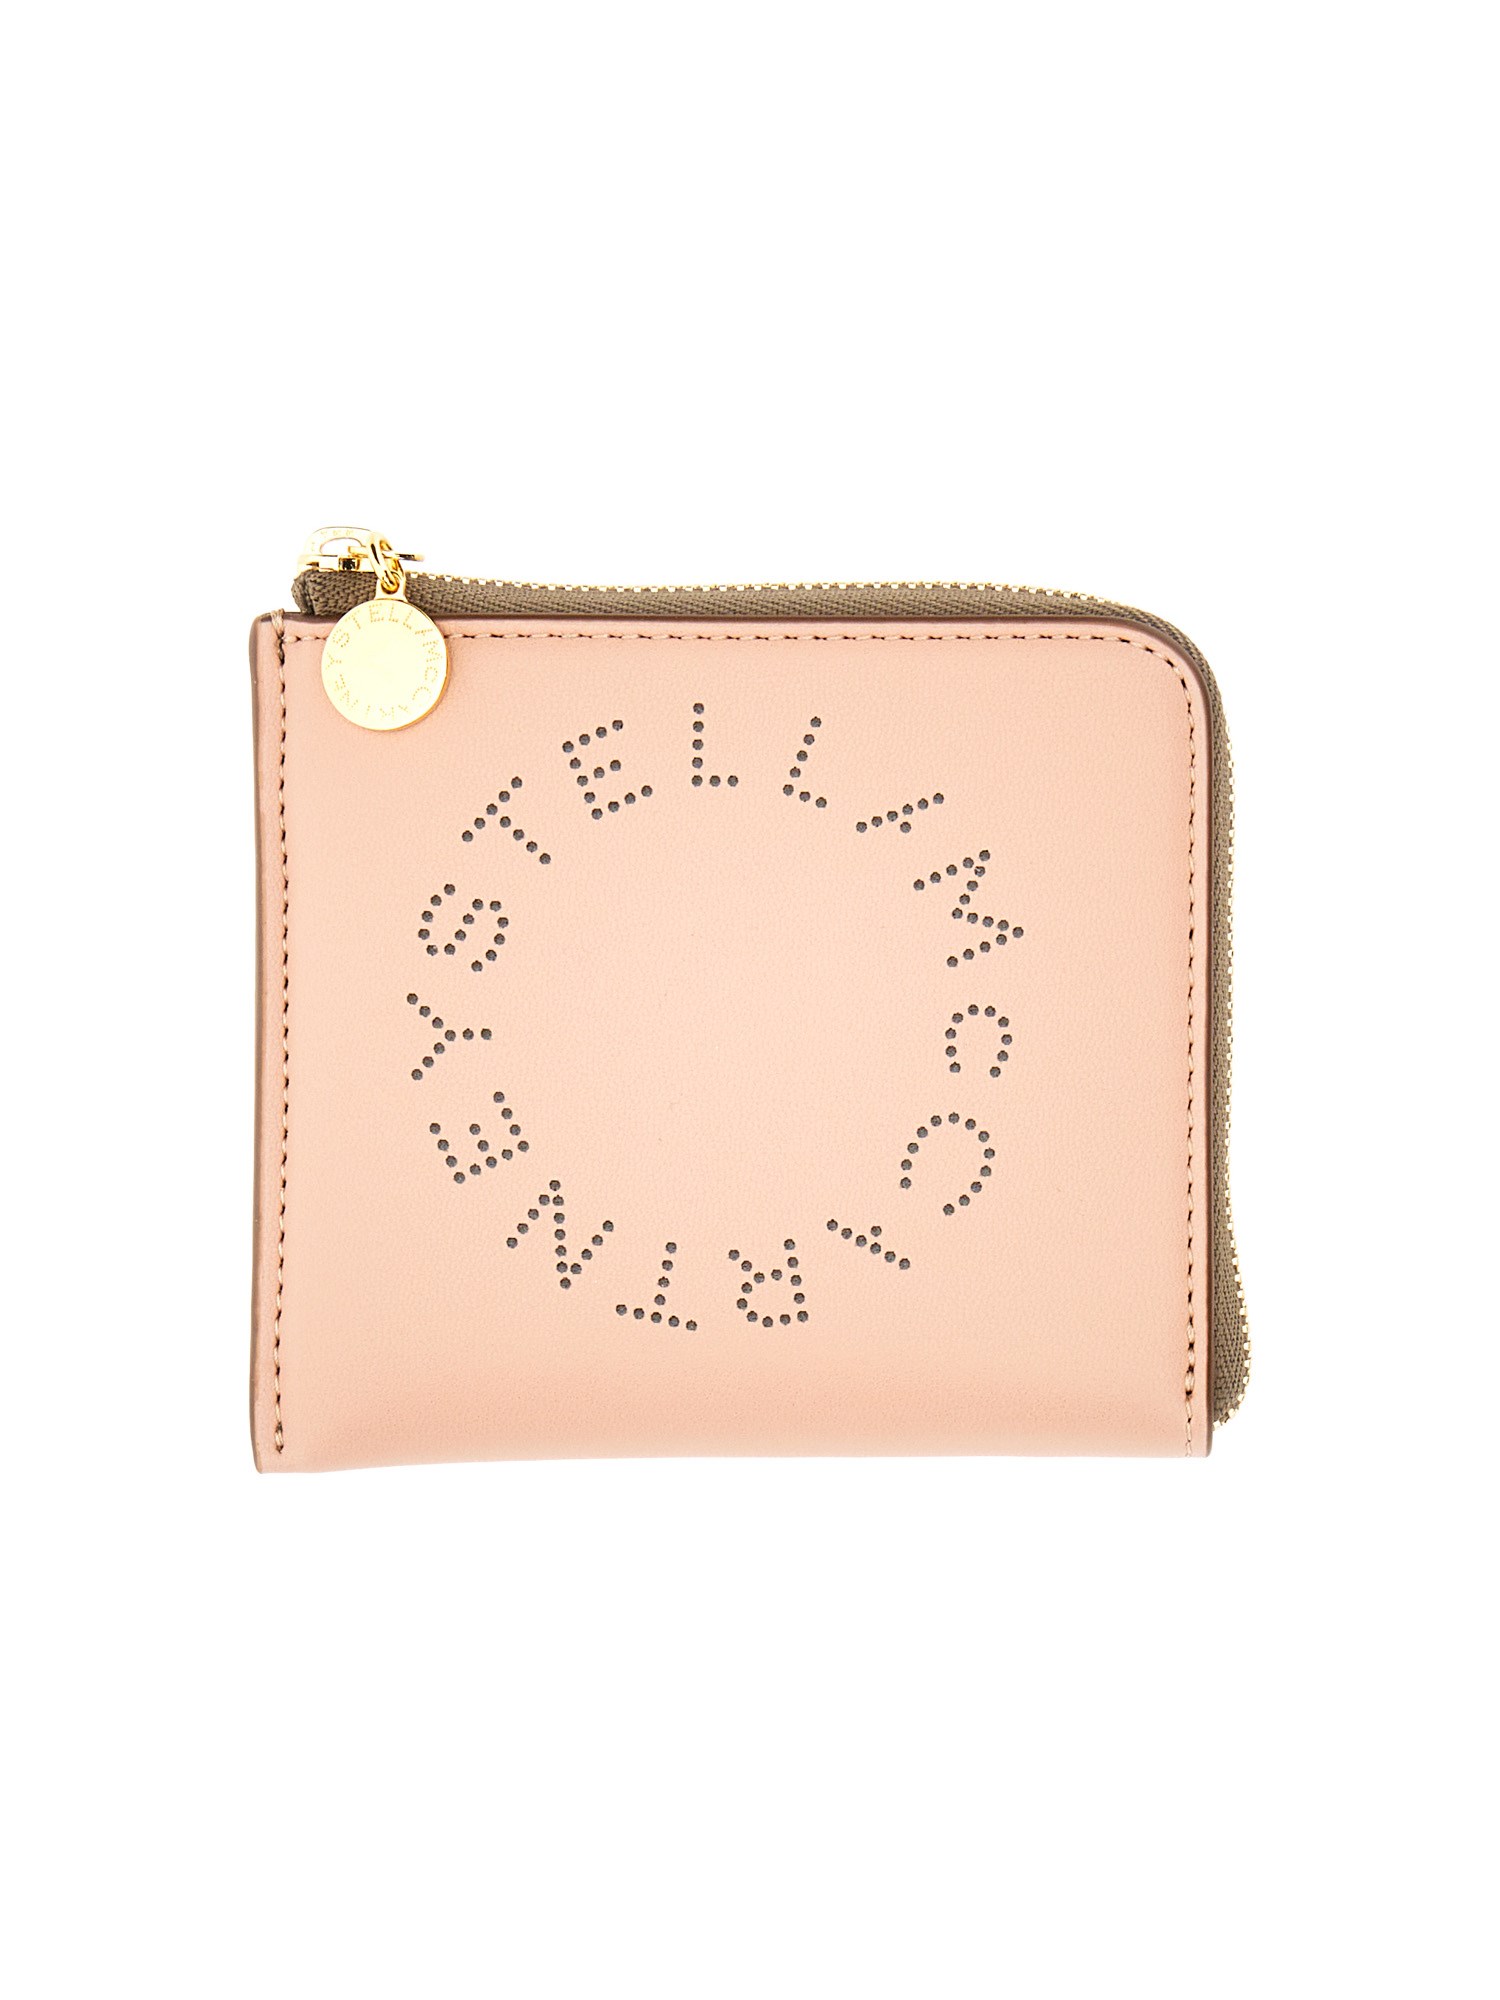 stella mccartney zipped wallet